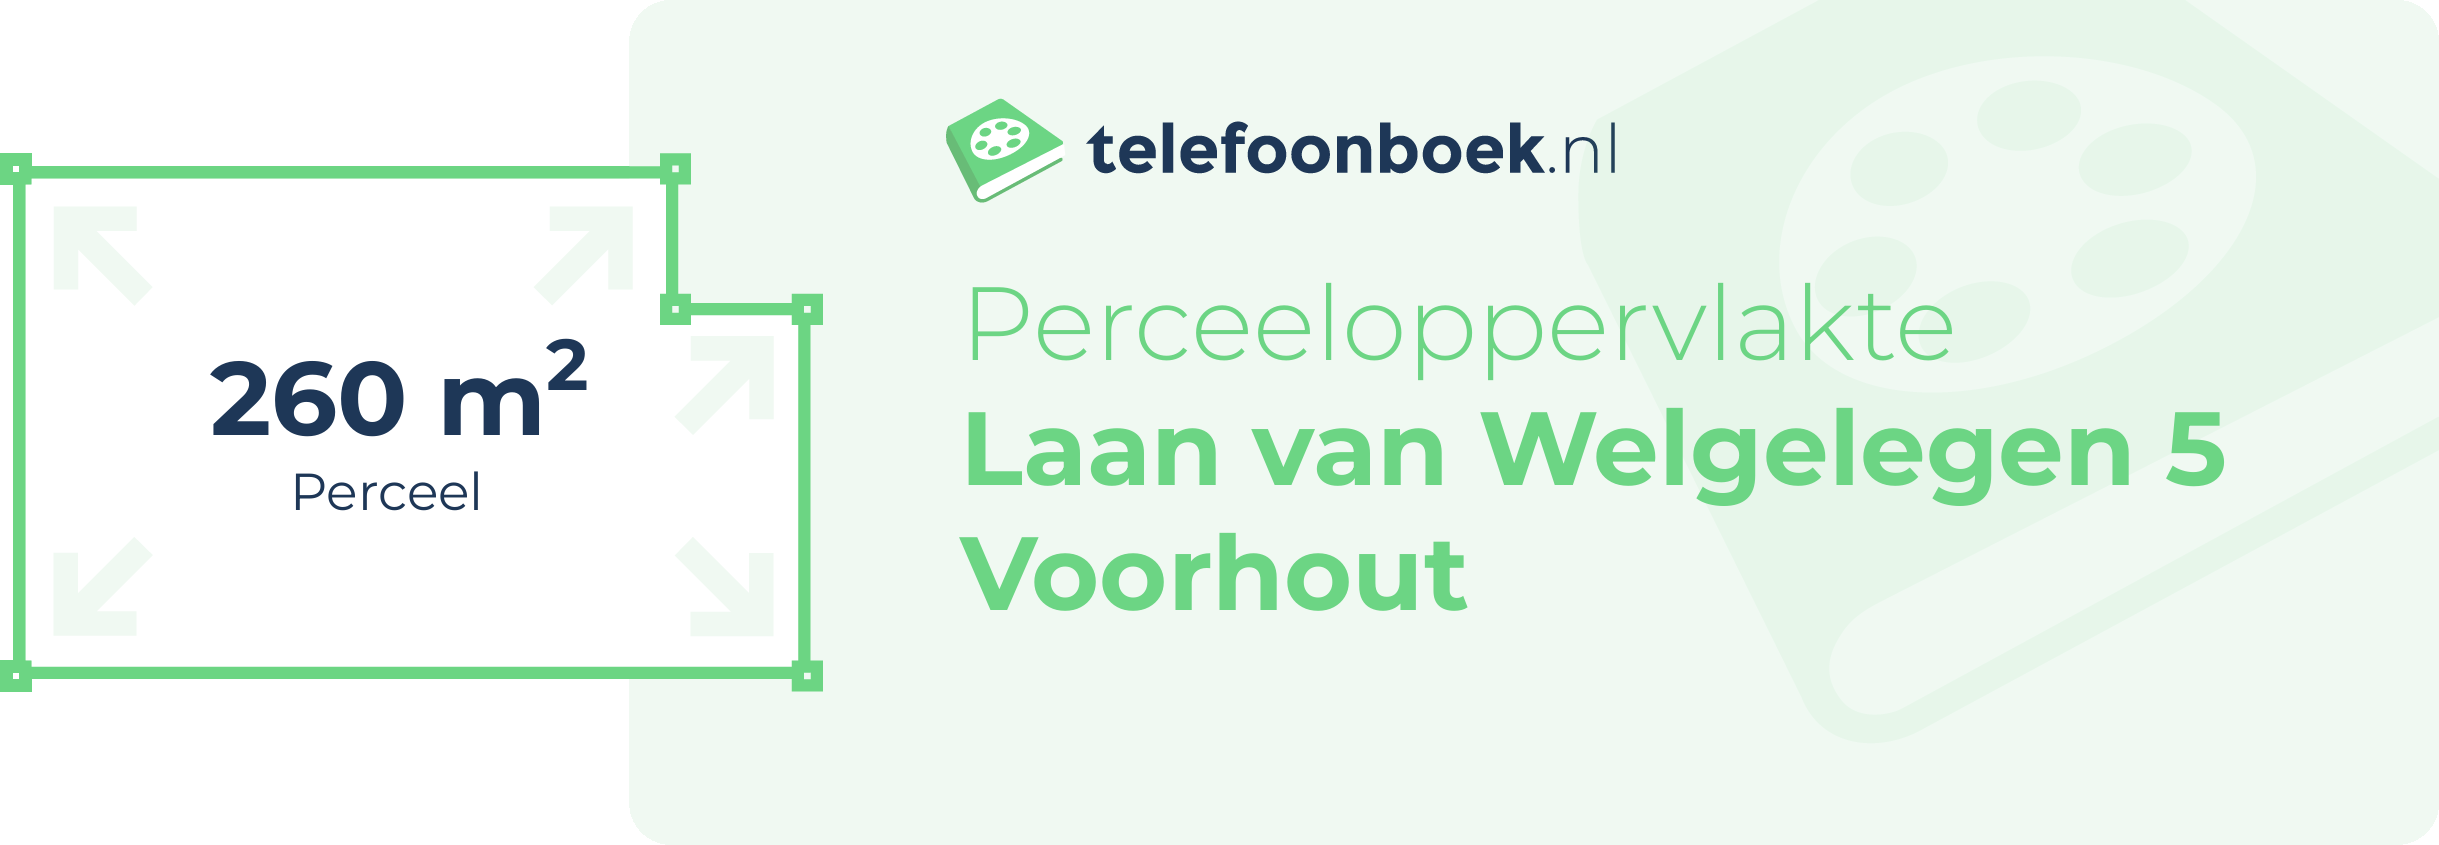 Perceeloppervlakte Laan Van Welgelegen 5 Voorhout